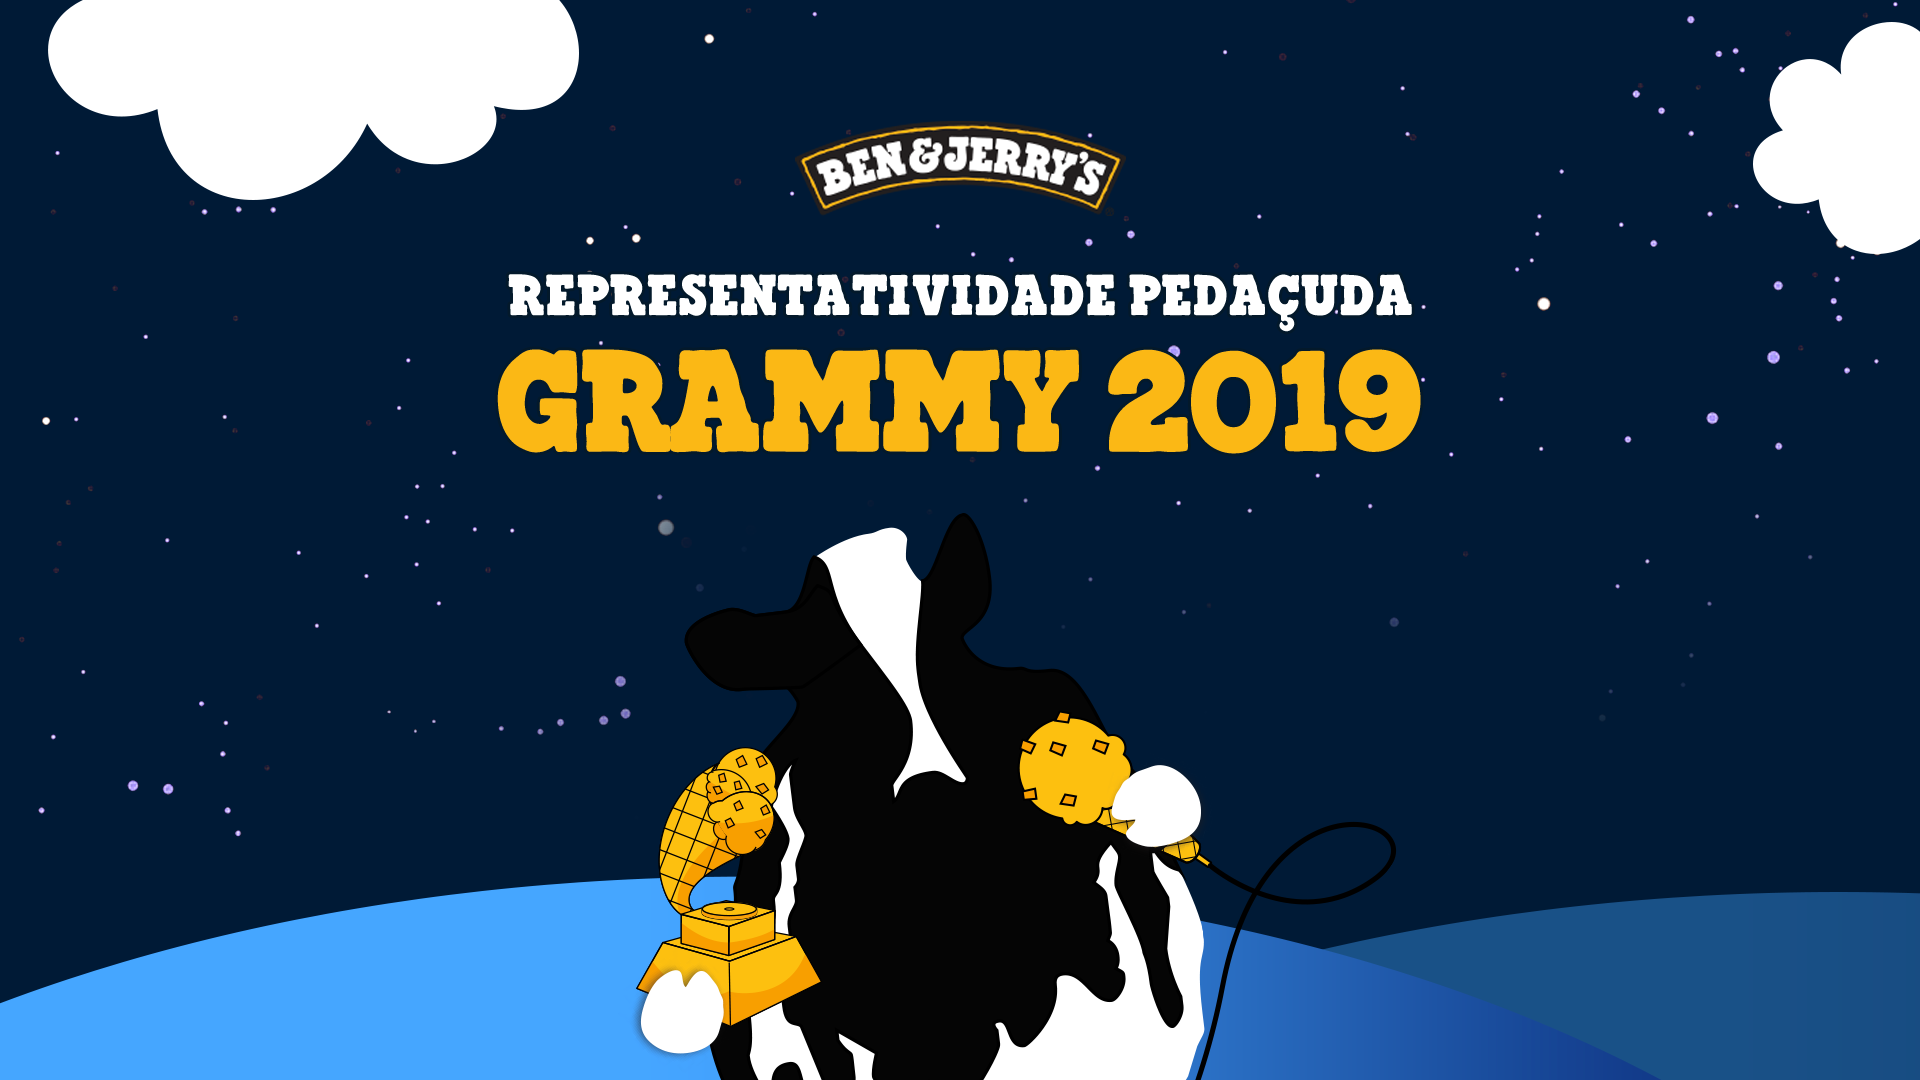 Ben & Jerry's – Grammy 2019